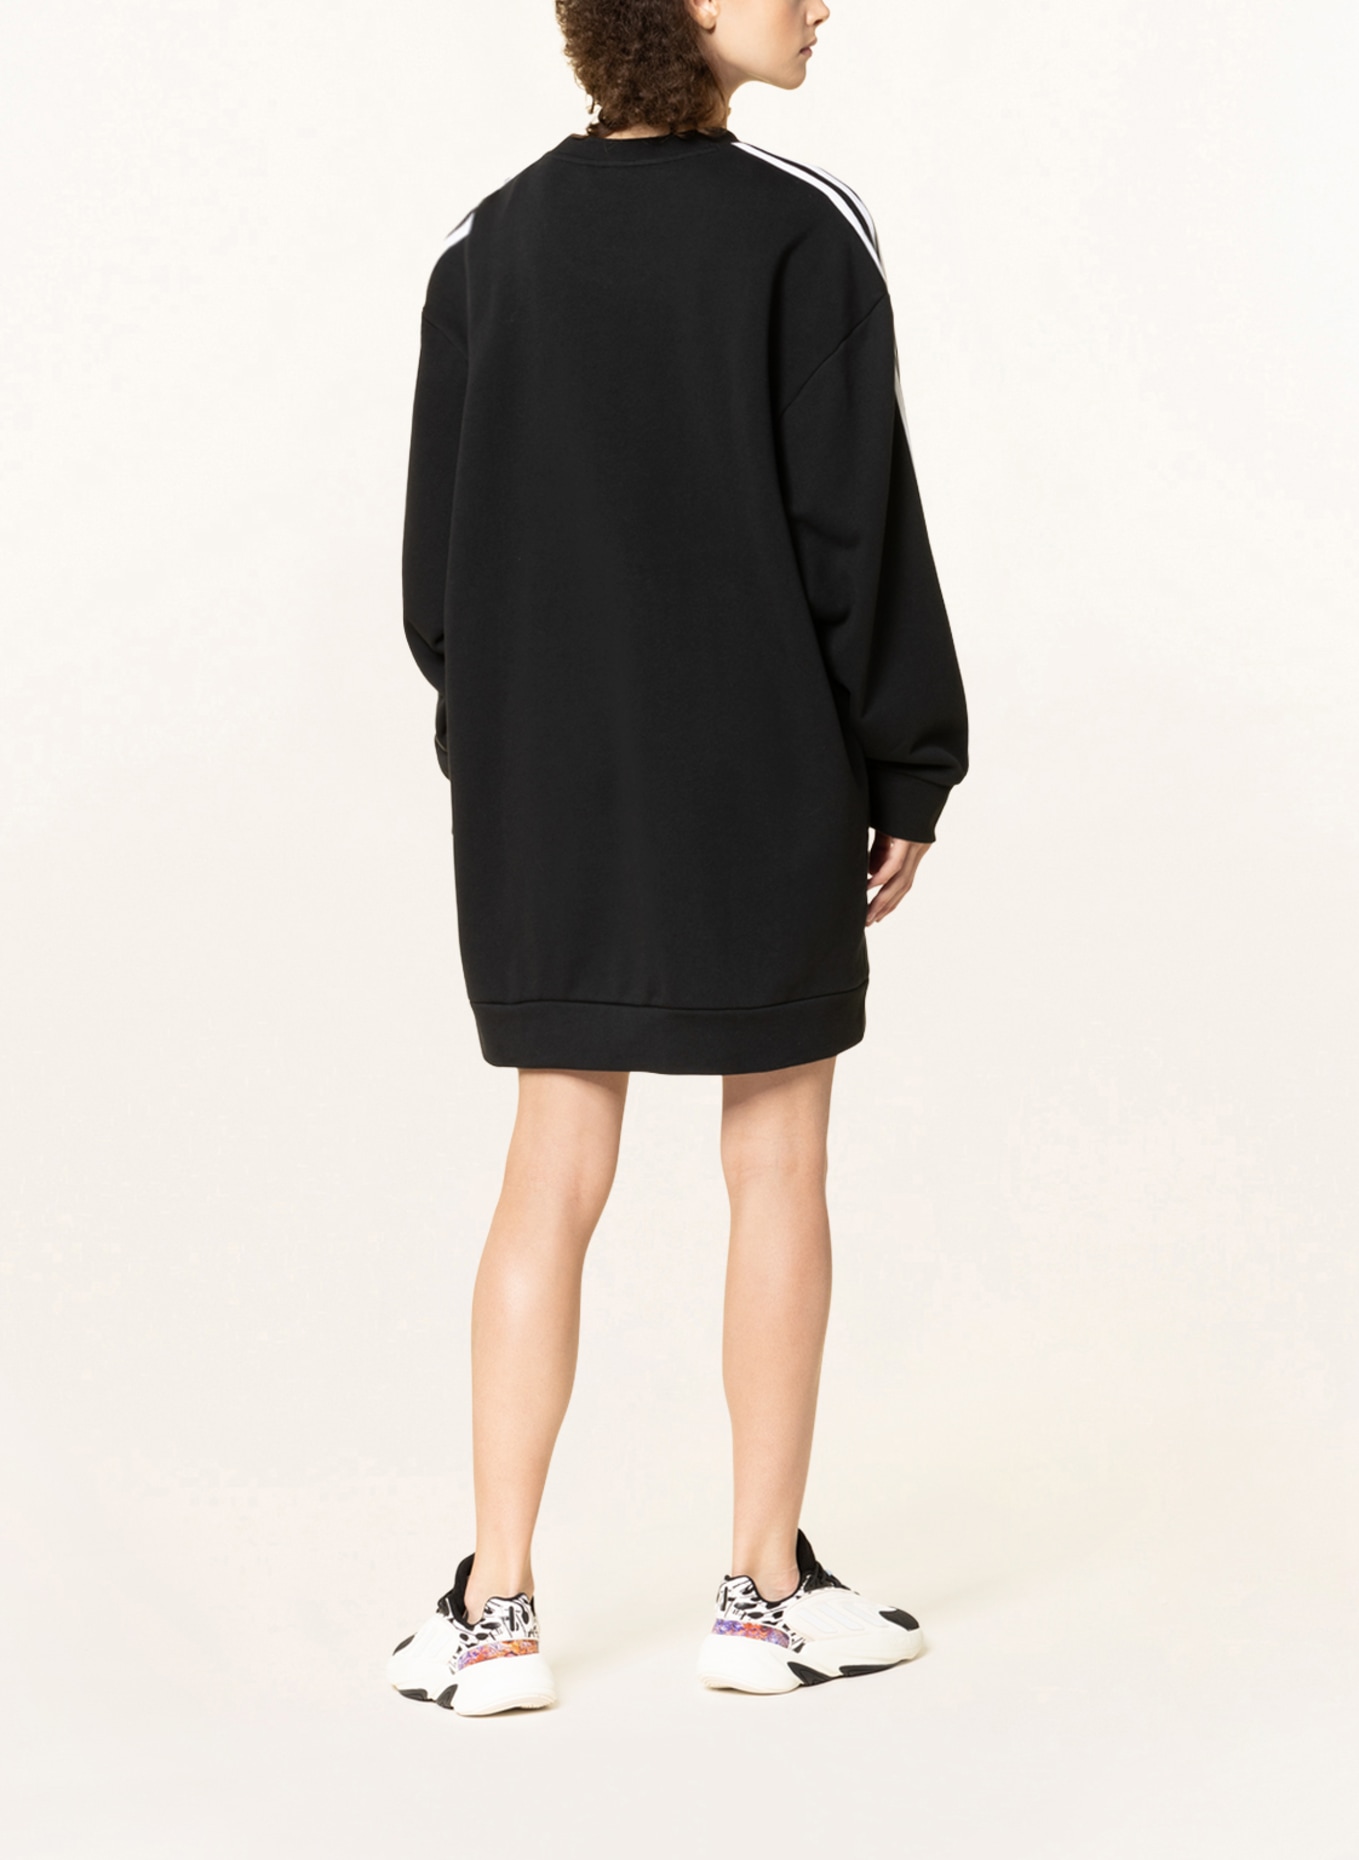 adidas Originals Sweater dress ADICOLOR CLASSICS in black